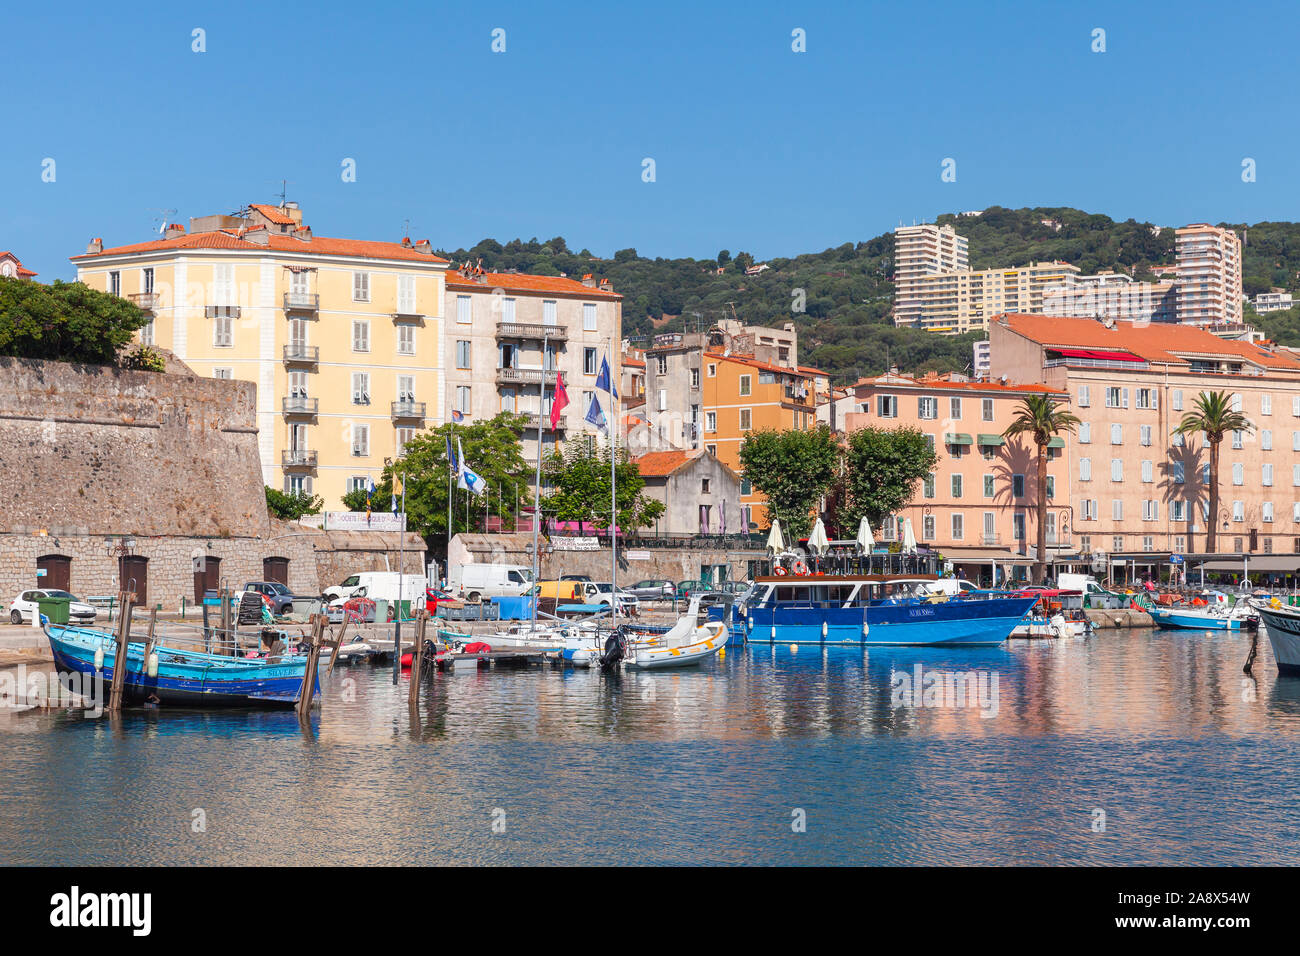 Ajaccio, Frankreich - 30. Juni 2015: Bunte Boote befinden sich im alten Hafen von Ajaccio, der Hauptstadt Korsikas, einer französischen Insel im Mittelmeer S günstig Stockfoto